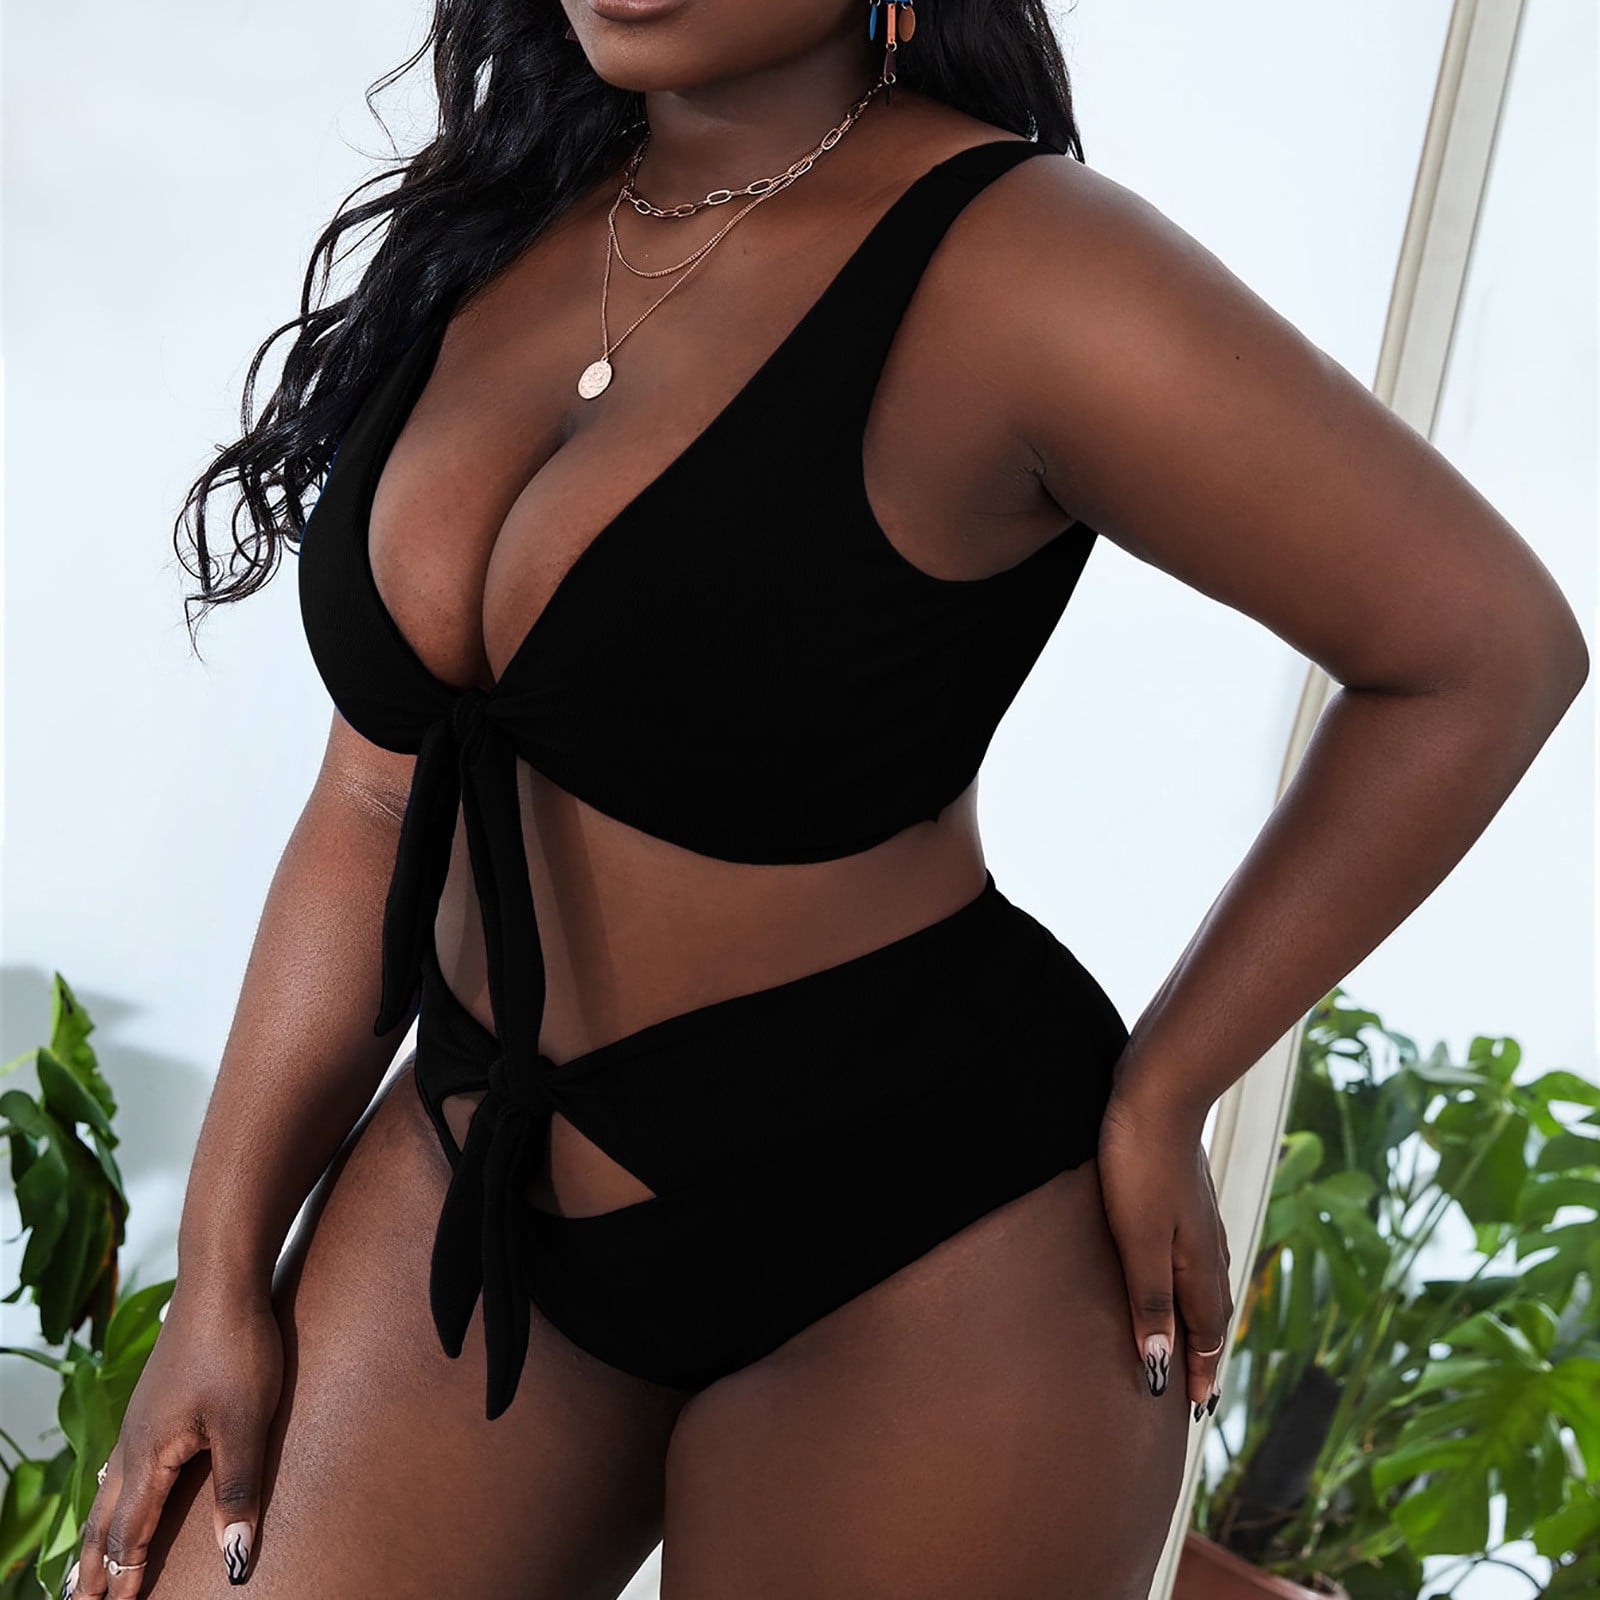 brandon lajoie recommends black females in bikinis pic